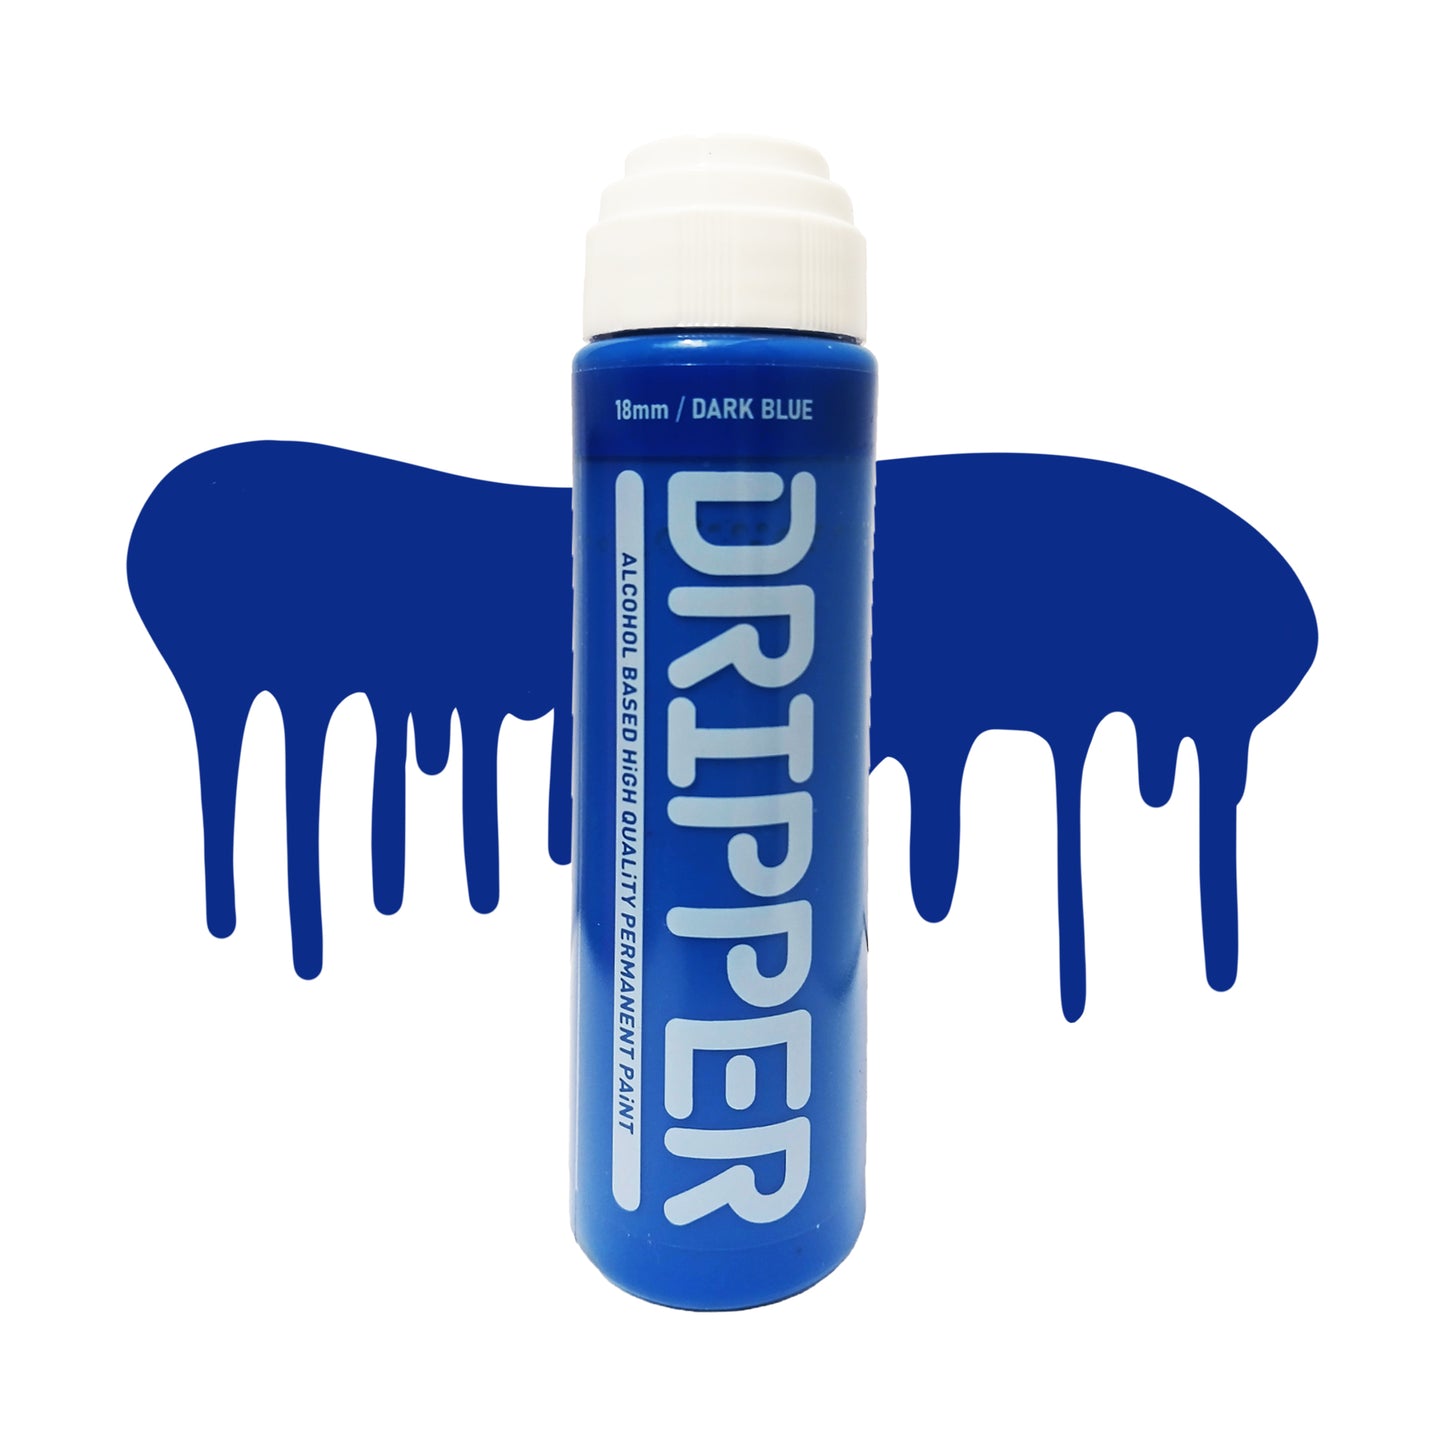 Dope Paint, Graffiti Squeeze Dripper Mop Marker in dark blue.